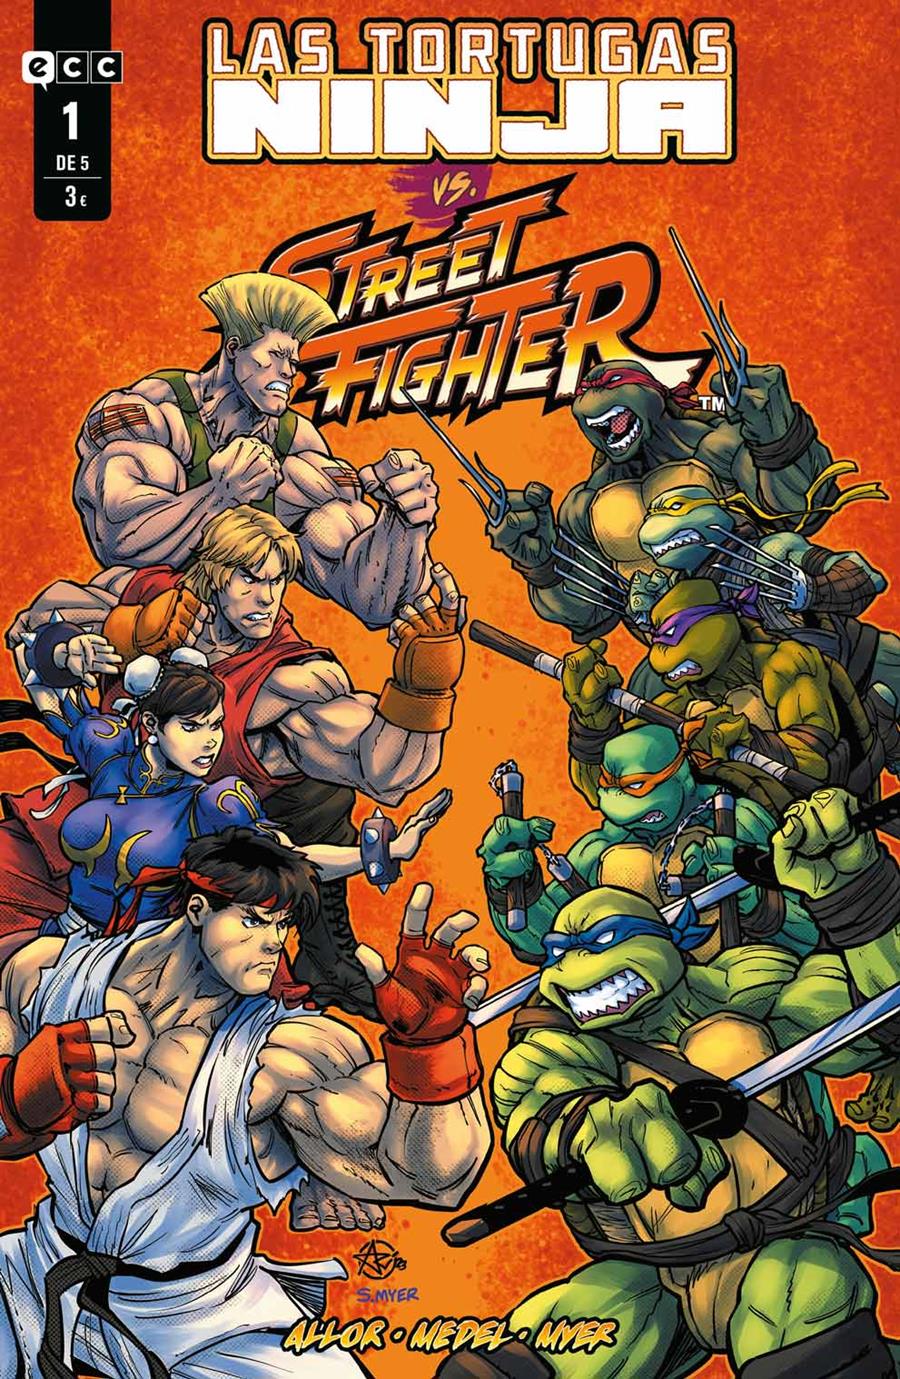 Las Tortugas Ninja vs. Street Fighter núm. 1 de 5 | N1123-ECC28 | Ariel Medel / Paul Allor | Terra de Còmic - Tu tienda de cómics online especializada en cómics, manga y merchandising